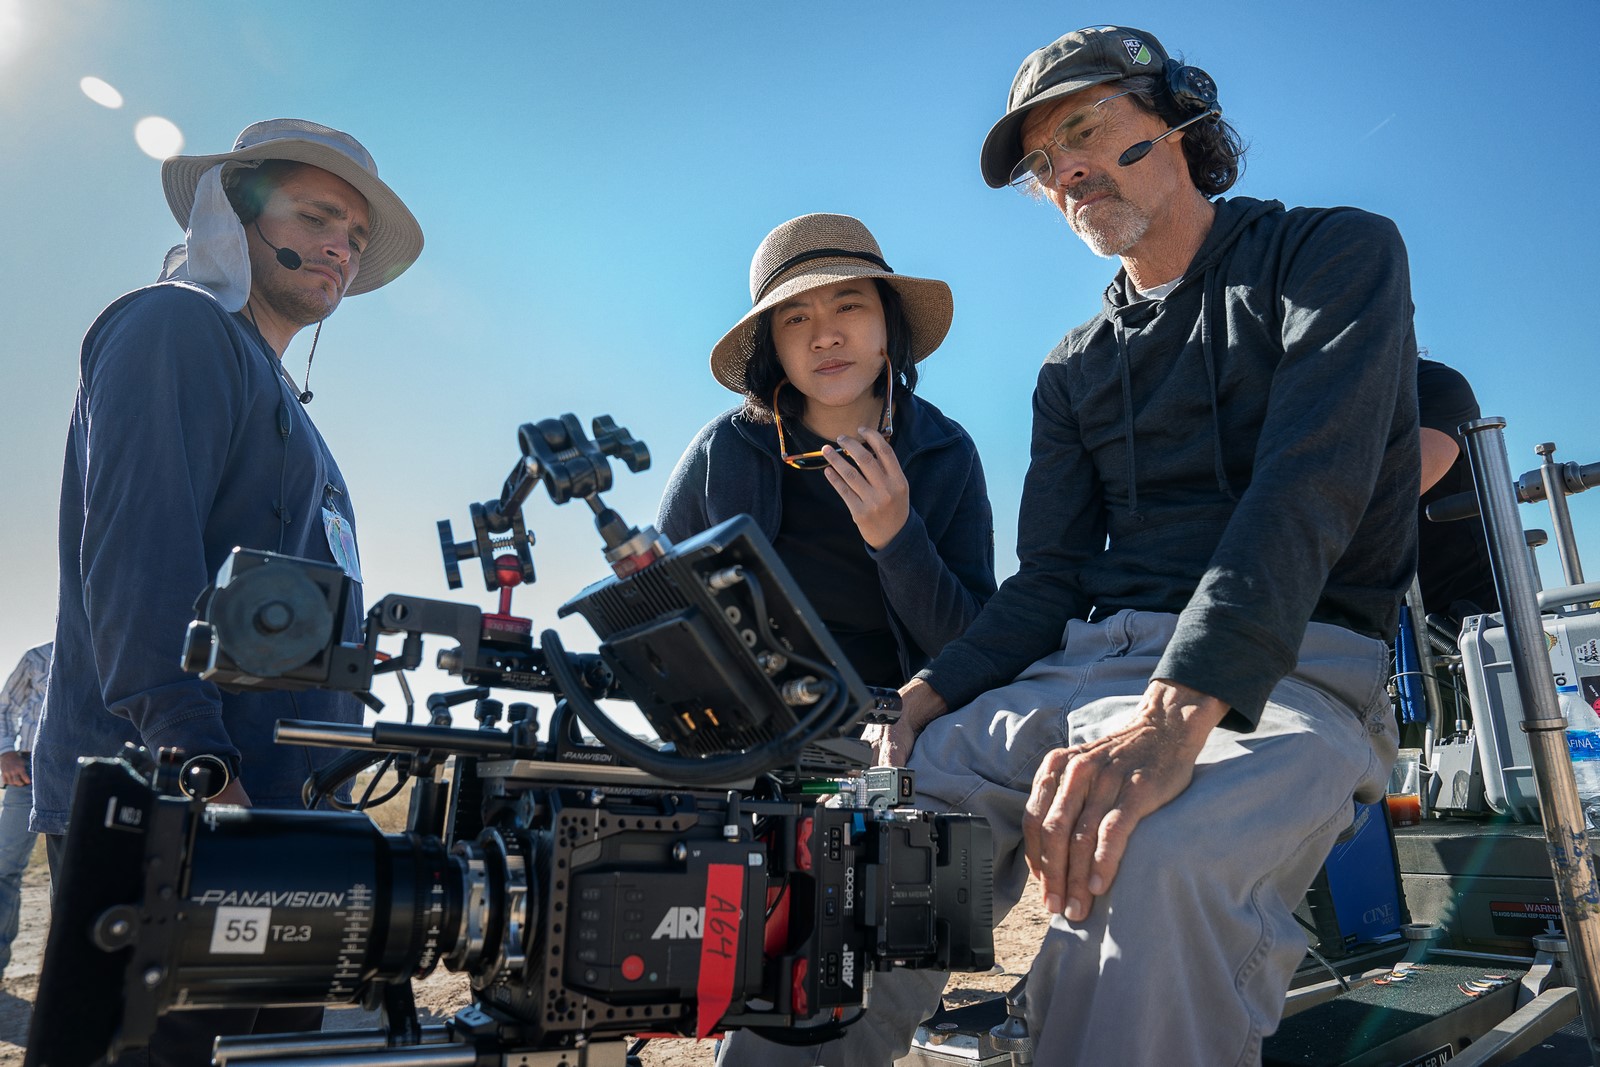 In arrivo su Netflix il film d'azione Trigger Warning con Jessica Alba diretta dalla regista indonesiana Mouly Surya alla sua prima produzione in lingua inglese.